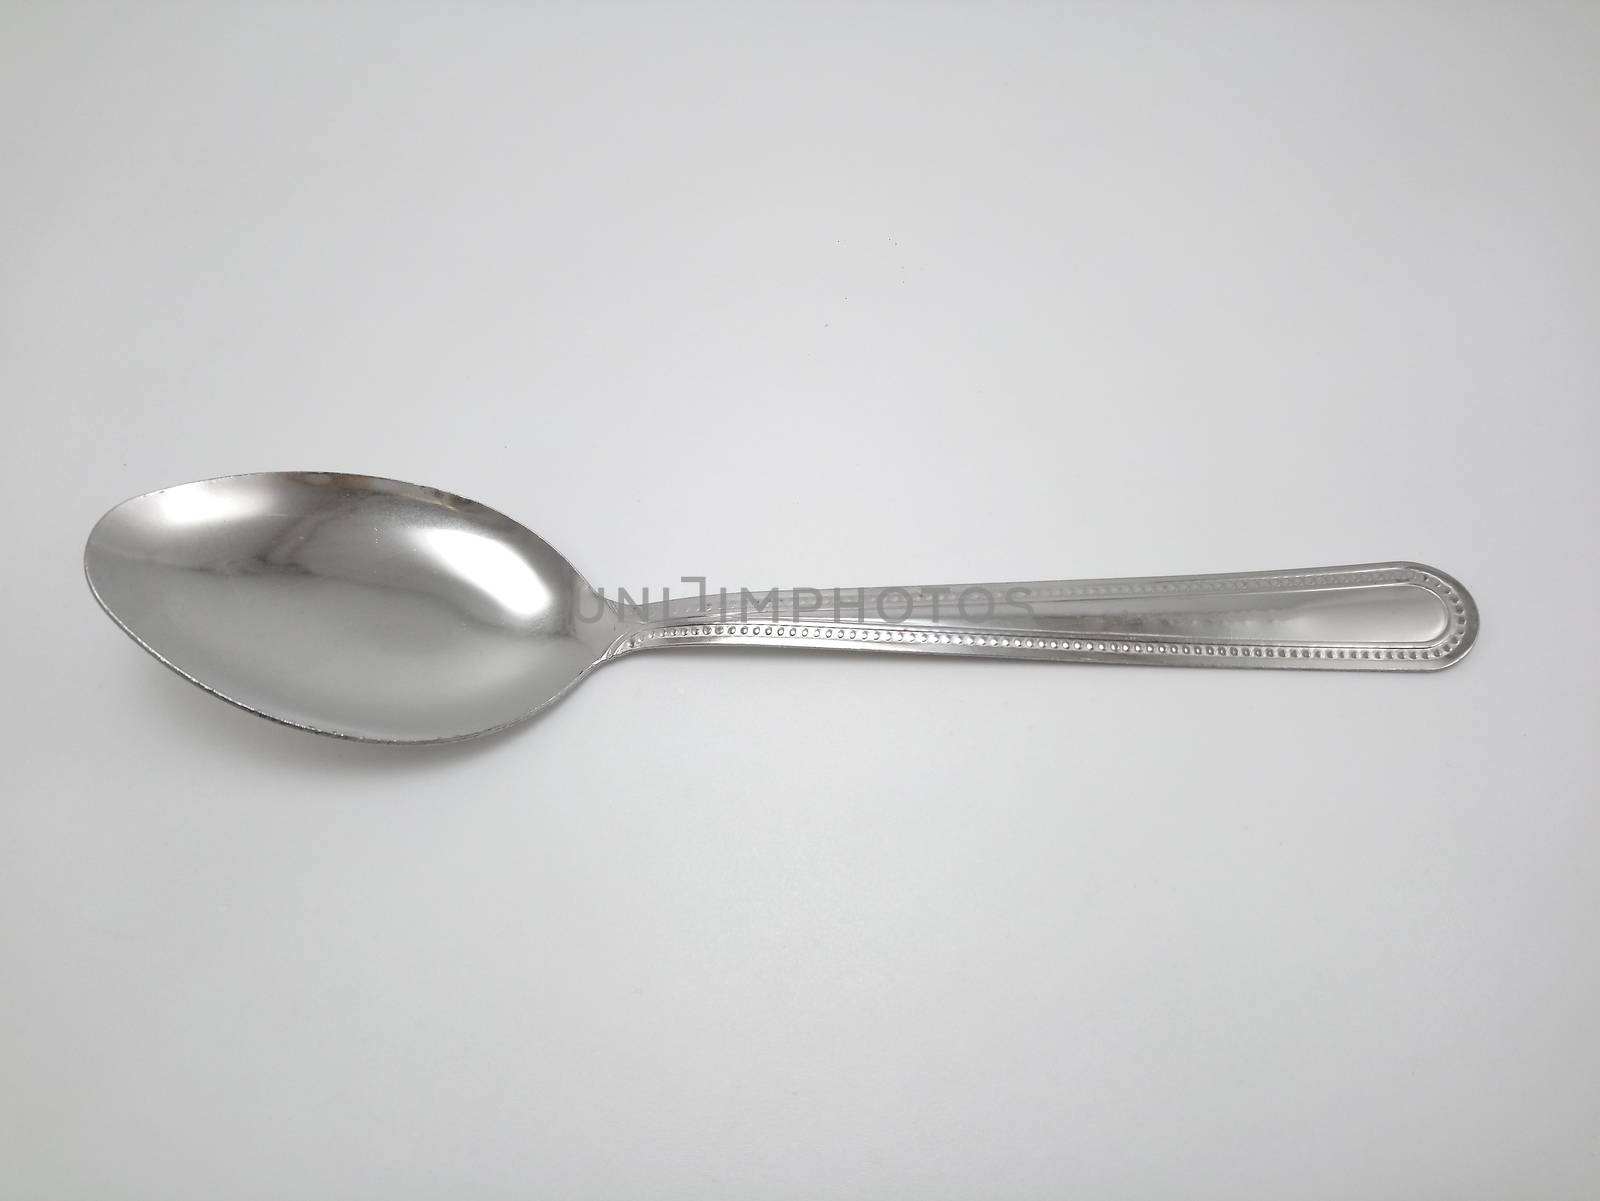 Stainless steel metal eating utensil spoon by imwaltersy